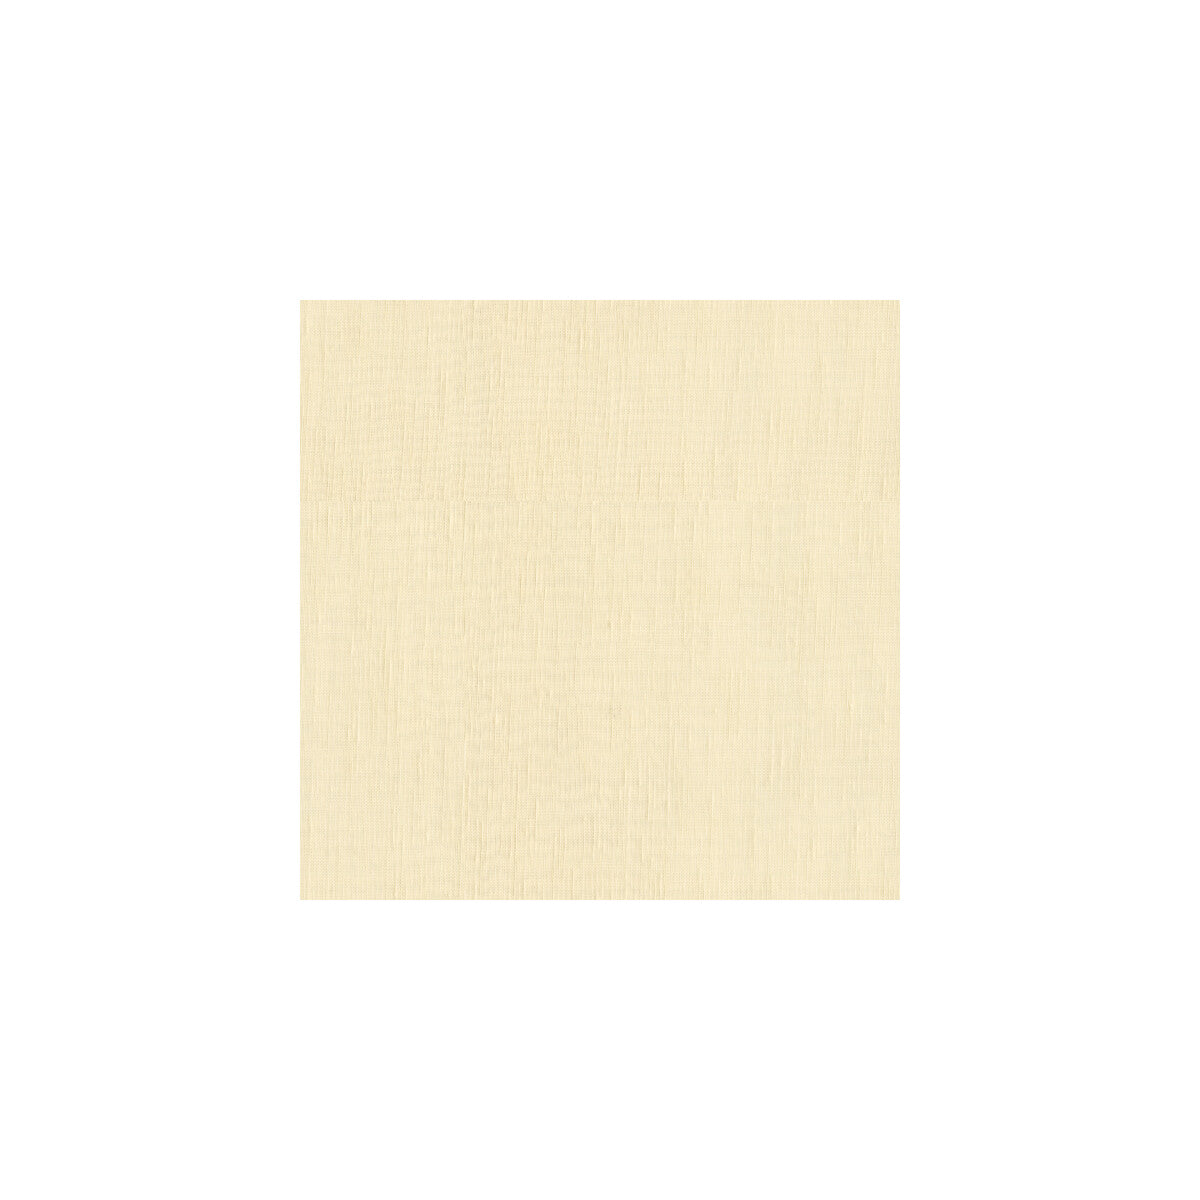 Kravet Basics fabric in 3743-1 color - pattern 3743.1.0 - by Kravet Basics